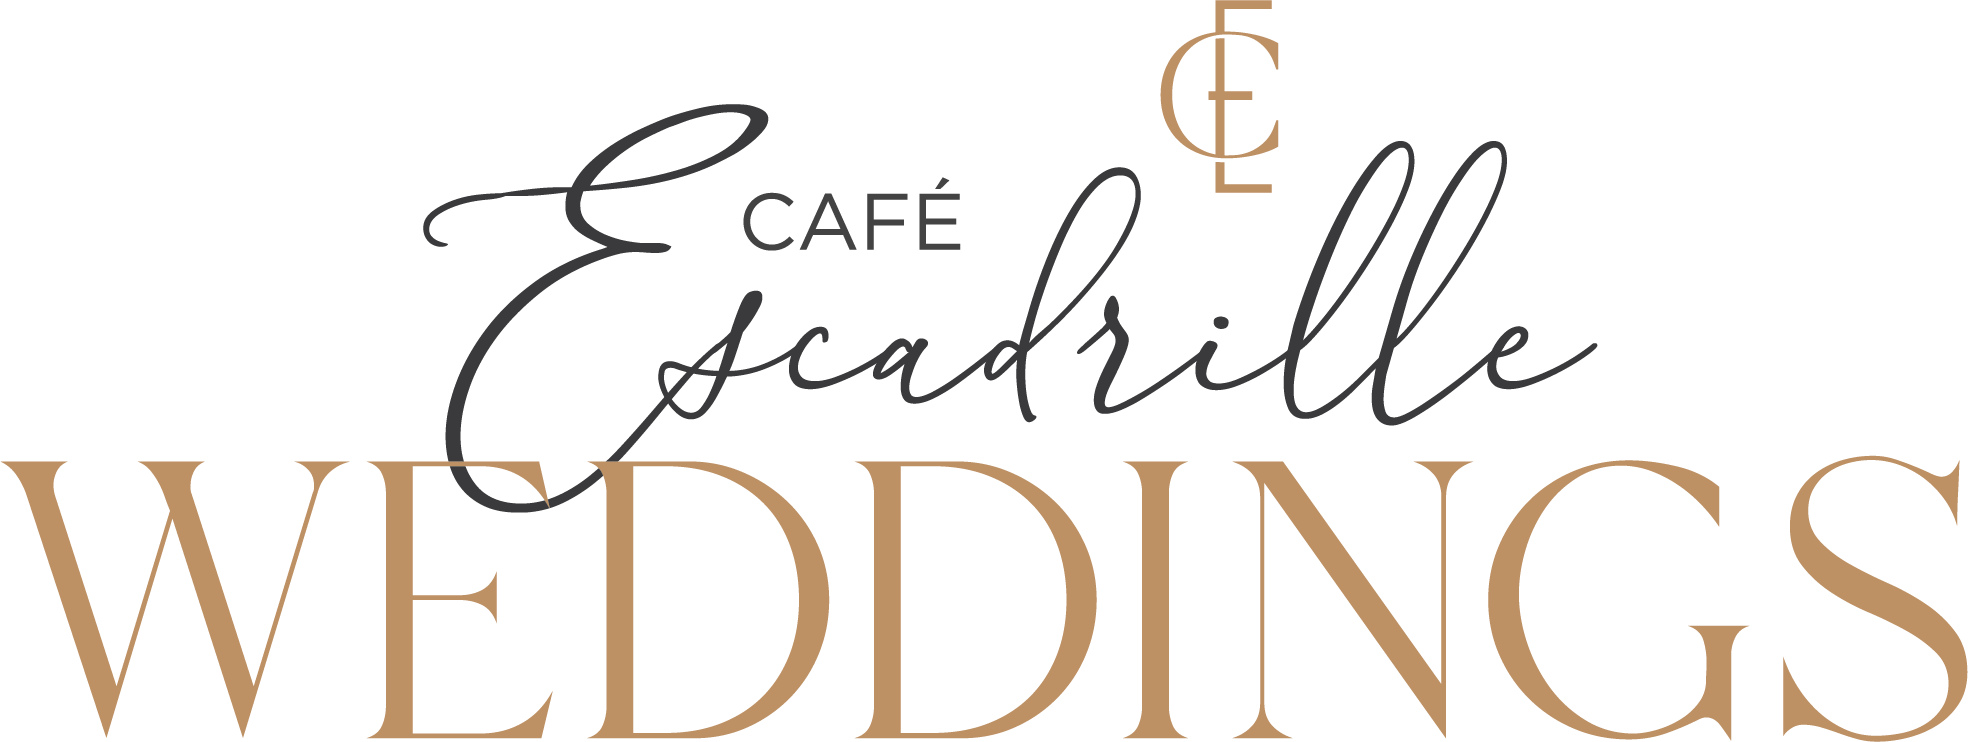 Café Escadrille Weddings